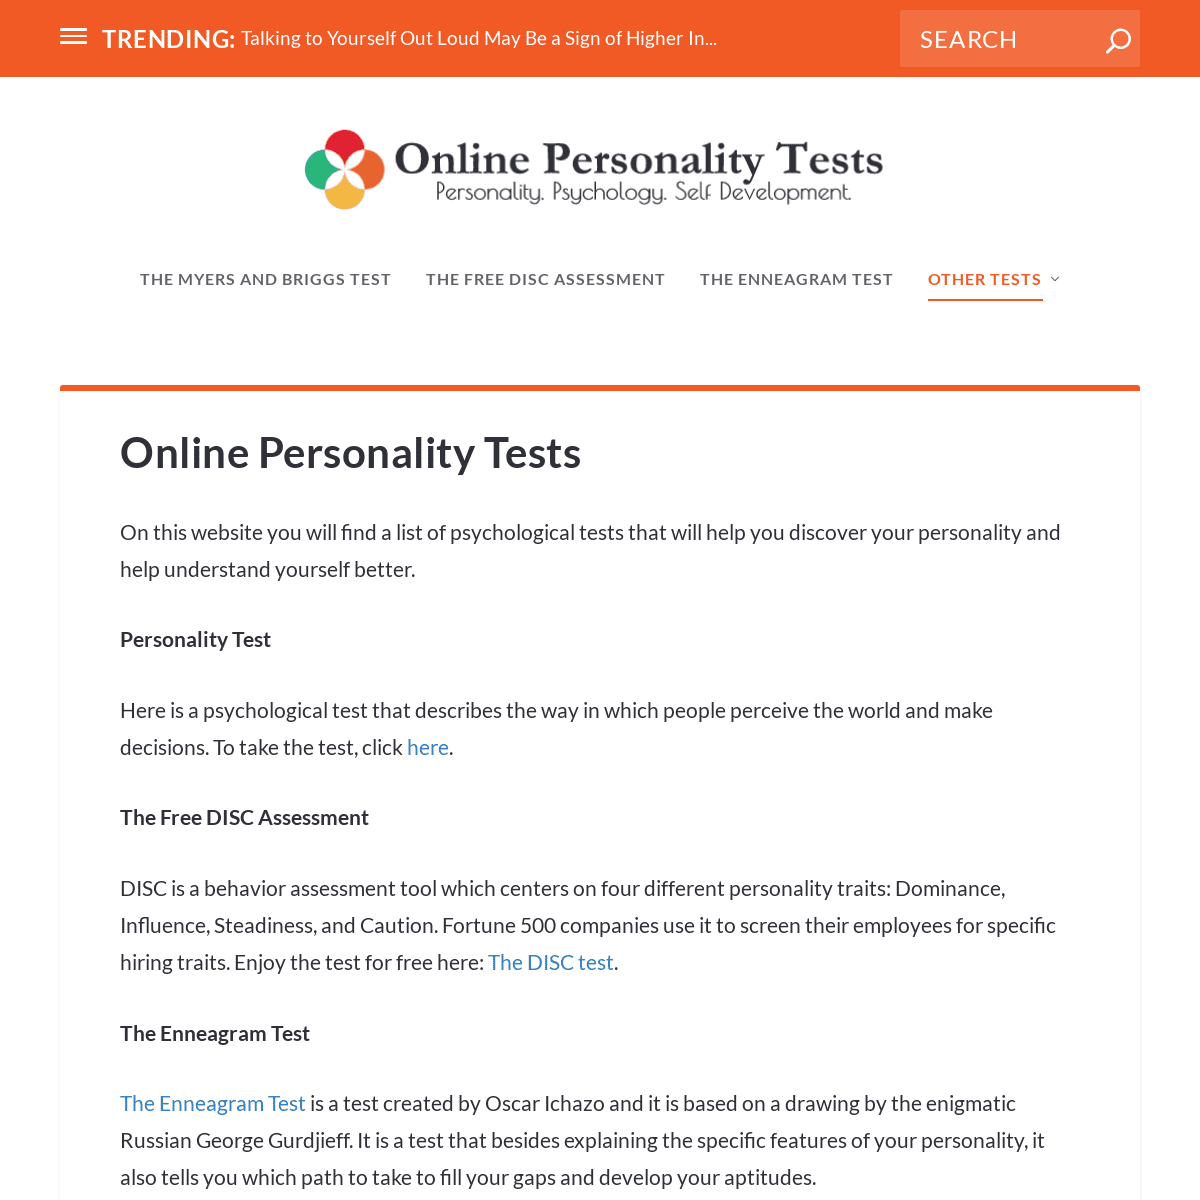 Online Personality Tests - Online Personality Tests